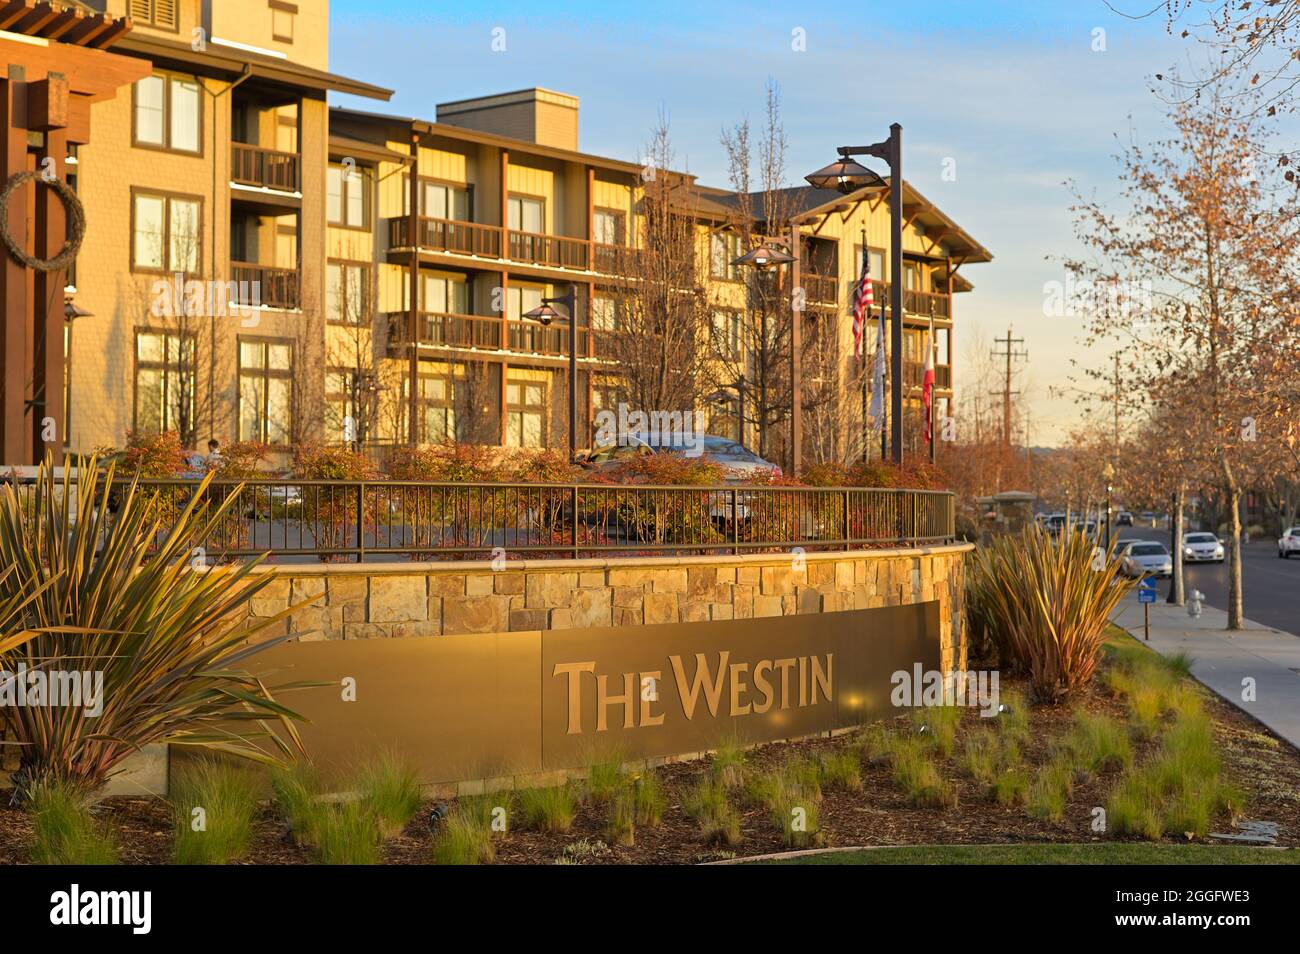 The Westin Verasa hotel, Napa CA Stock Photo